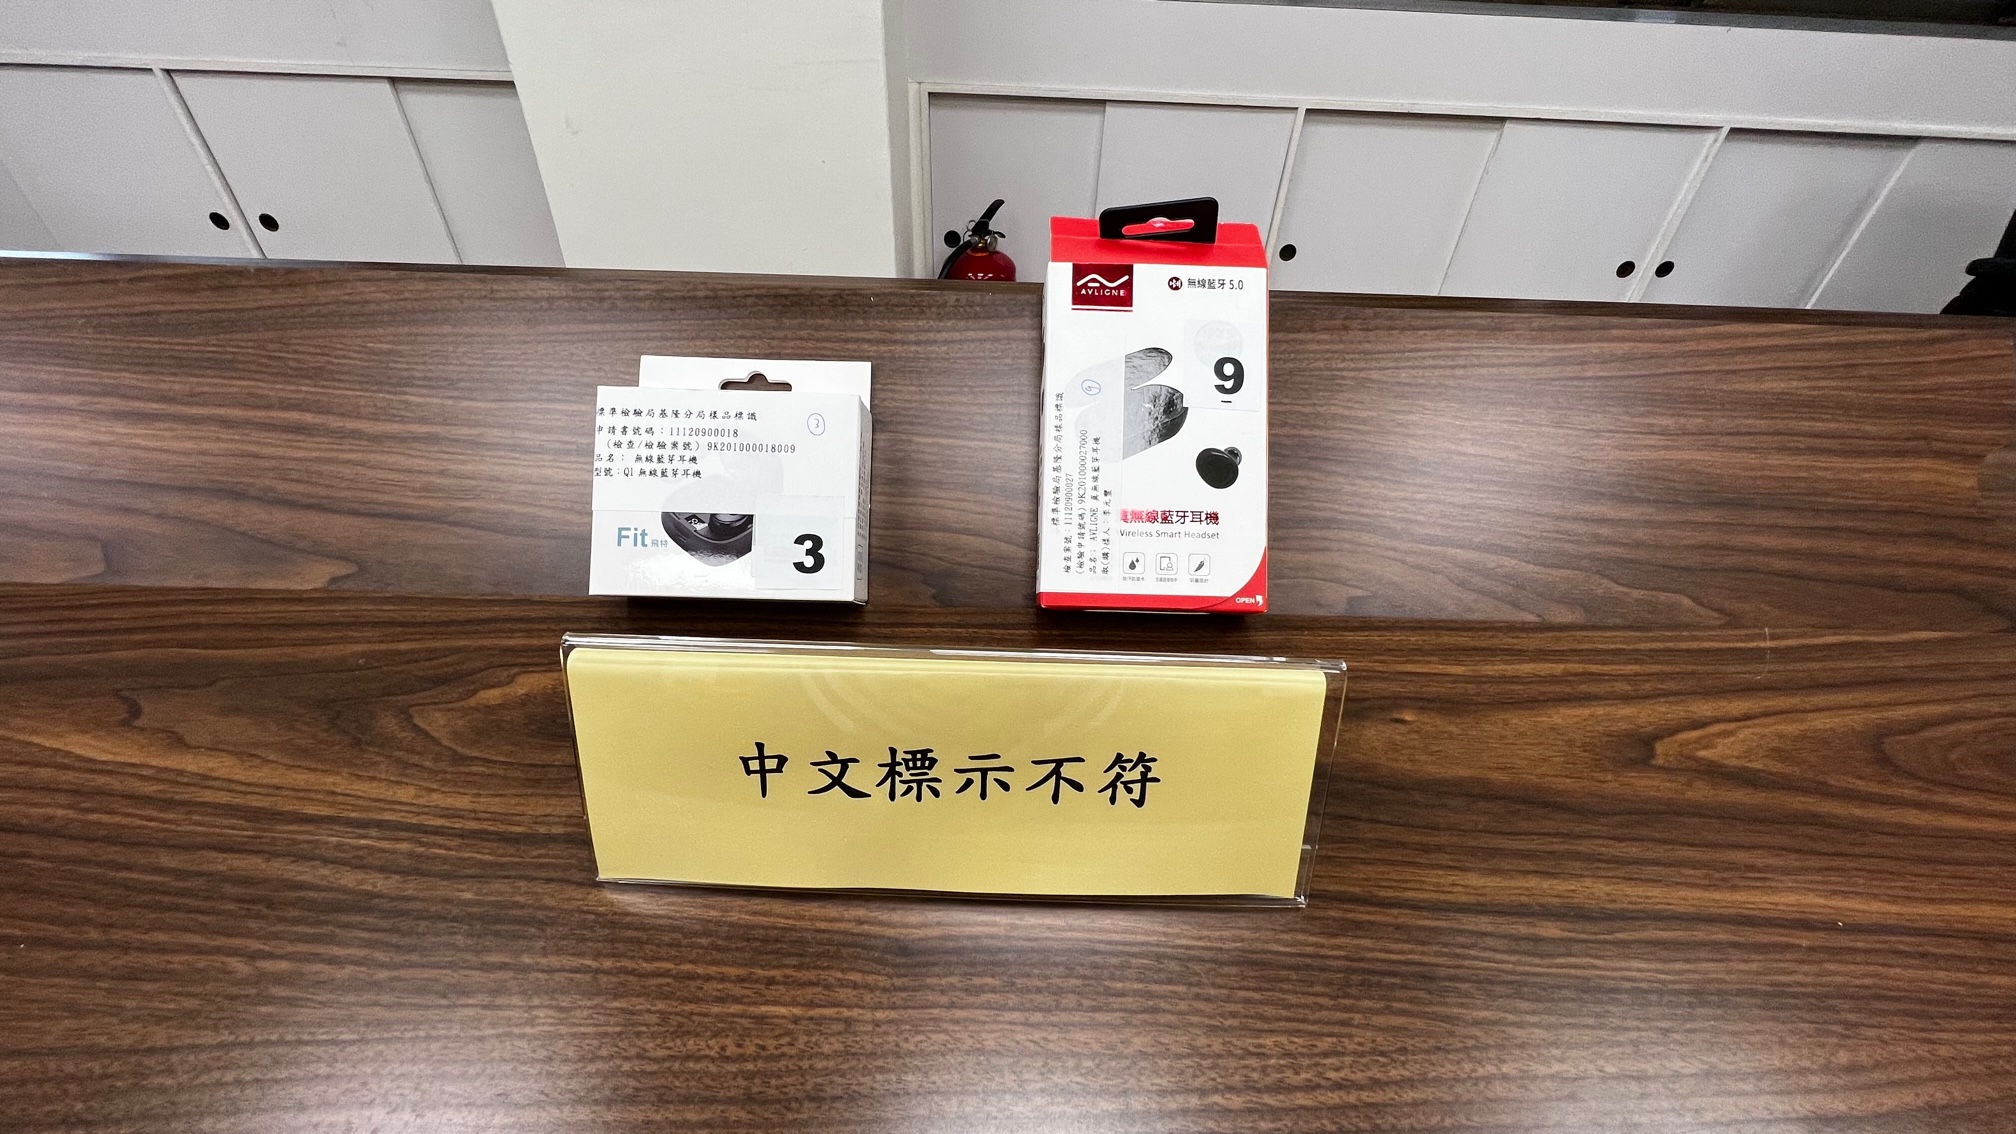 經濟部標準檢驗局與財團法人中華民國消費者文教基金會共同公布市售「藍牙耳機」檢測結果